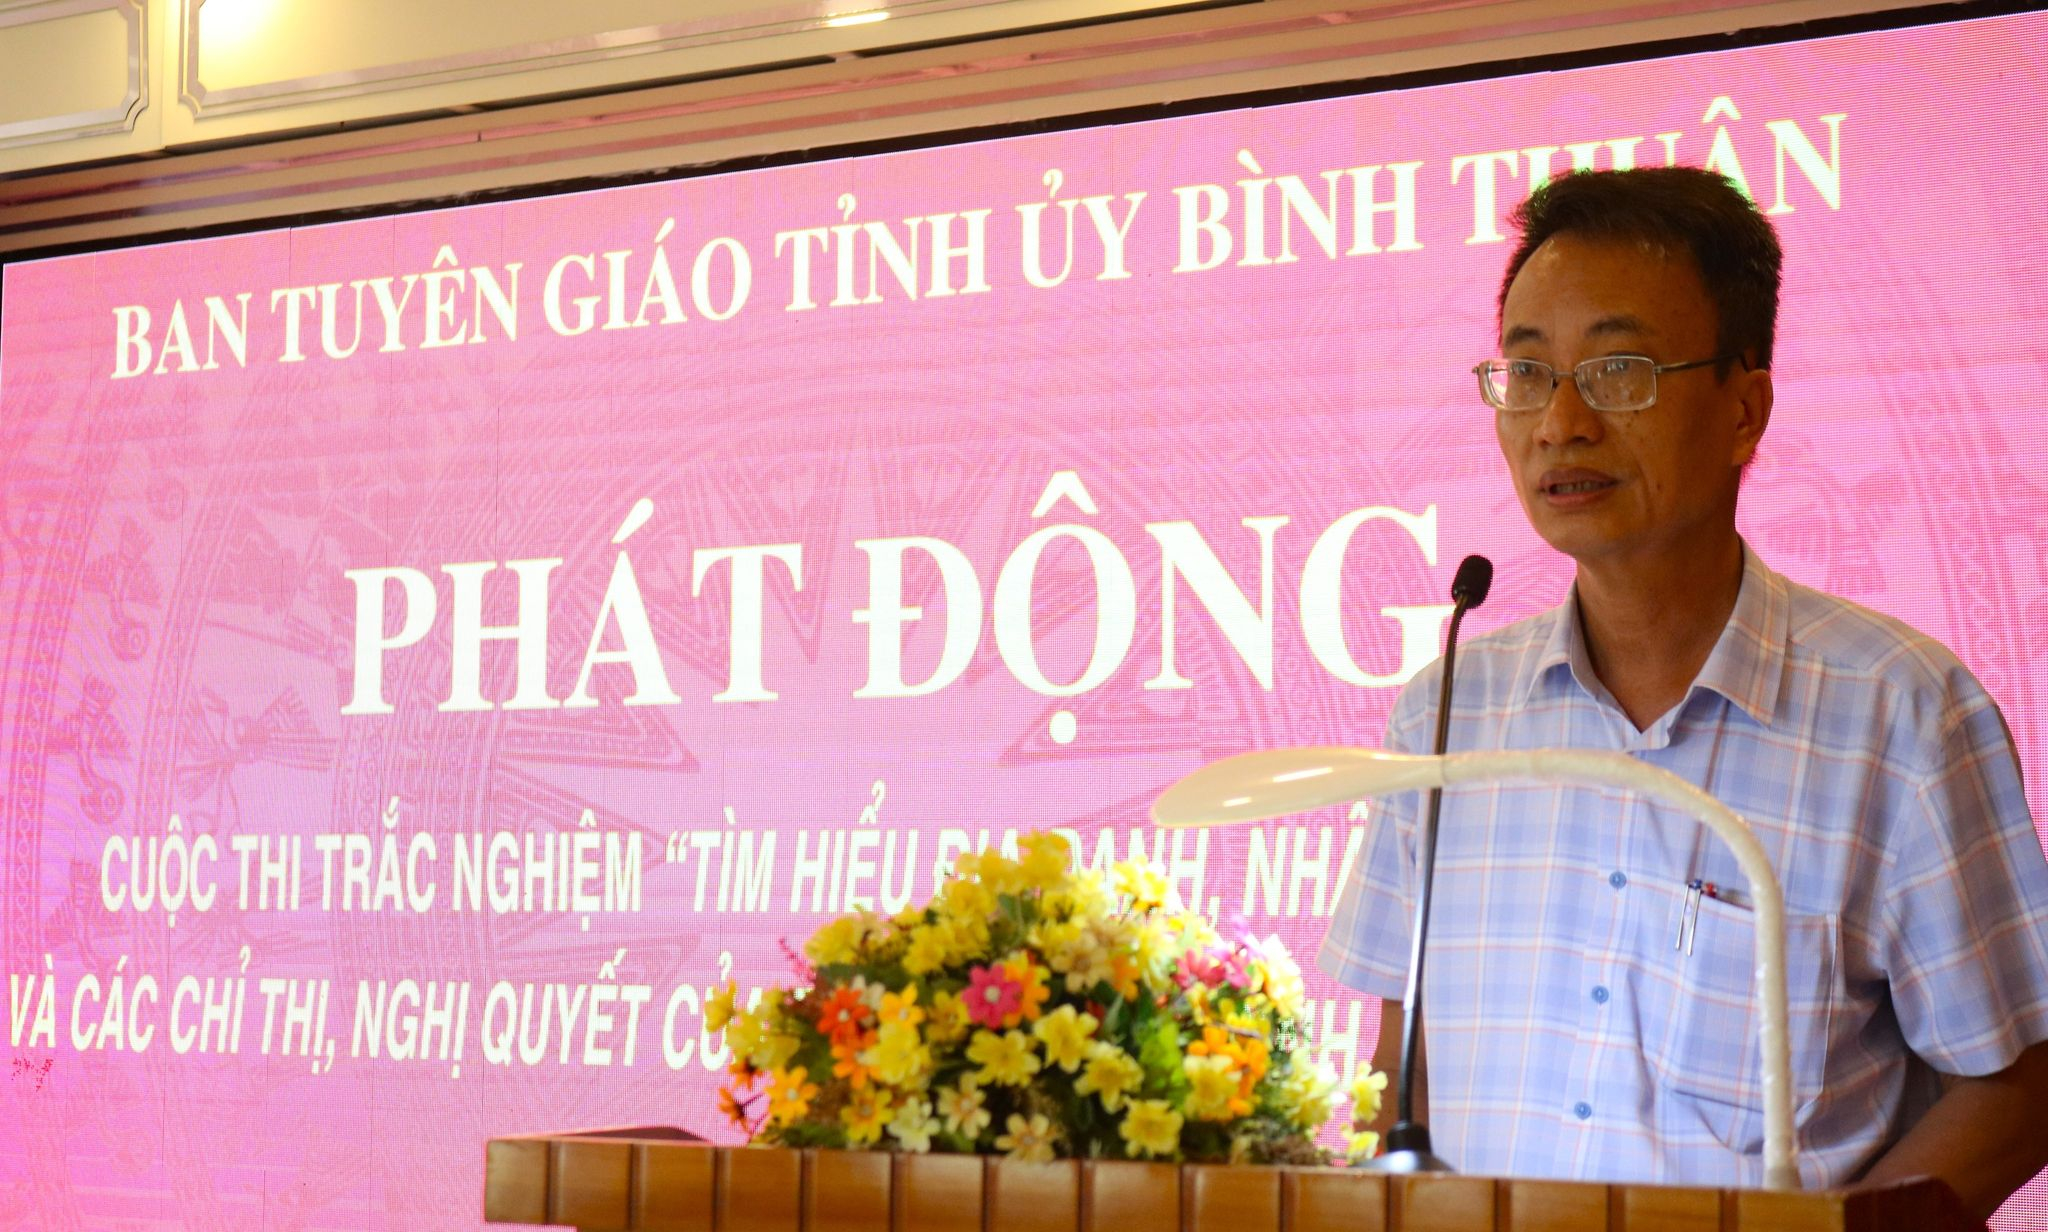 ông Huỳnh Thái Dương – Phó trưởng Ban Tuyên giáo Tỉnh ủy Bình Thuận công bố thể lệ cuộc thi.